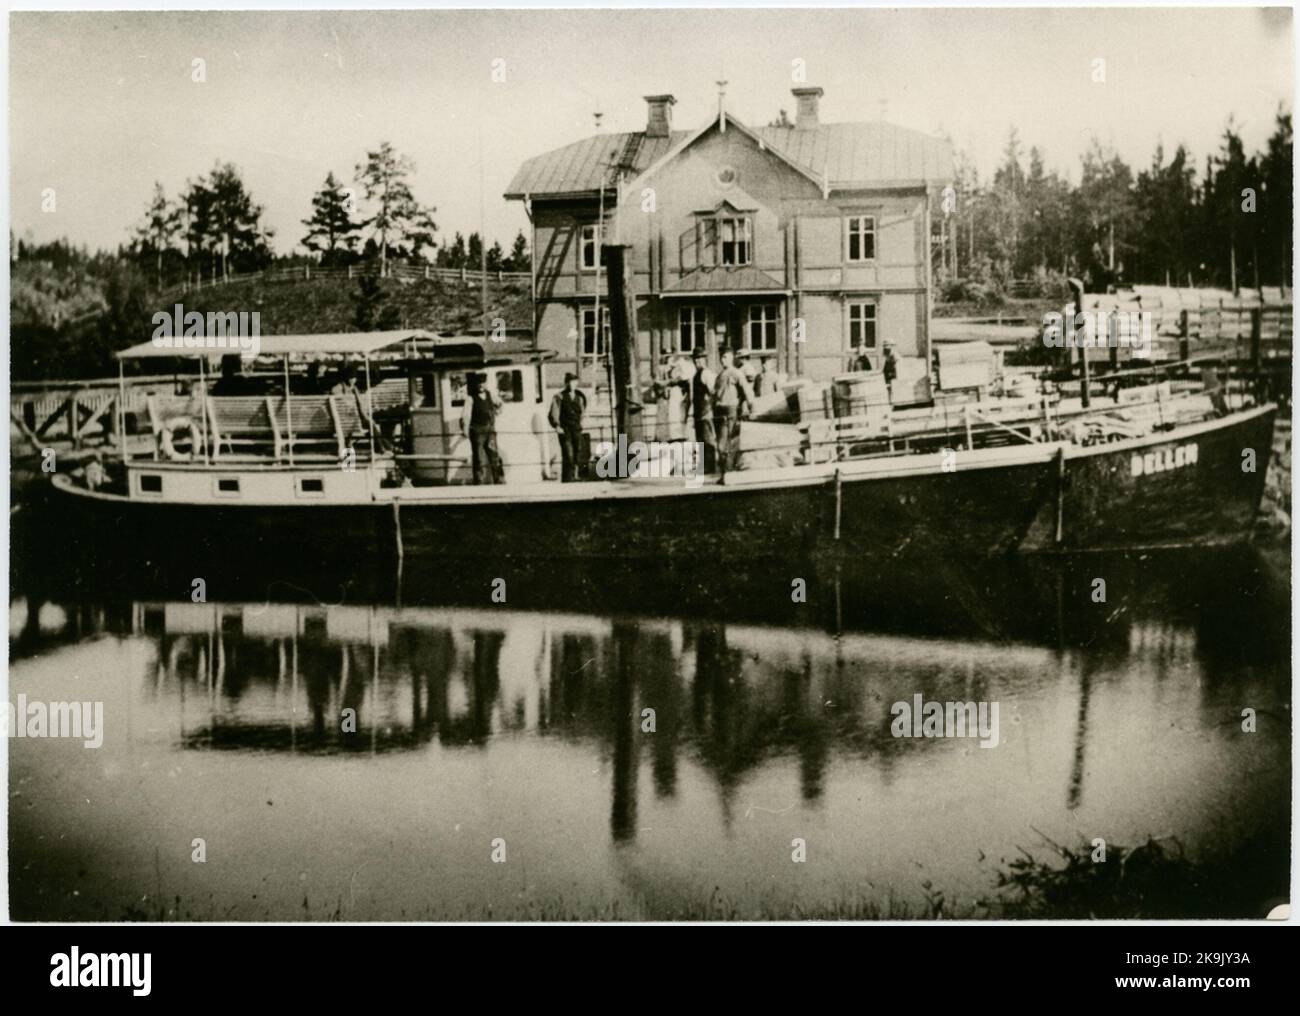 Il vaporiera Dellen fuori dalla stazione di Näsvikens. Il vaporizzatore Dellen è stato costruito nel 1861 presso Lindbergs MV & Varv AB a Stoccolma. Il cliente era Hudiksvall Steam Sawing Mill Company Limited di Londra, presso Svenska Hudiksvalls Angaktiebolag, chiamata la società inglese. Le dimensioni della barca erano di 18,20 x 3,53 x 1,93 metri. Il motore a vapore era SEK 20 Deps. Nel 1868, la vaporiera Dellen è stata trasferita alla società di produzione del legno di Hudiksvall, di recente costituzione, da quando la società inglese ha interrotto le sue attività. Dopo l'entrata in funzione della stazione di Näsviken nel novembre 1874, la società di comunicazione Foto Stock